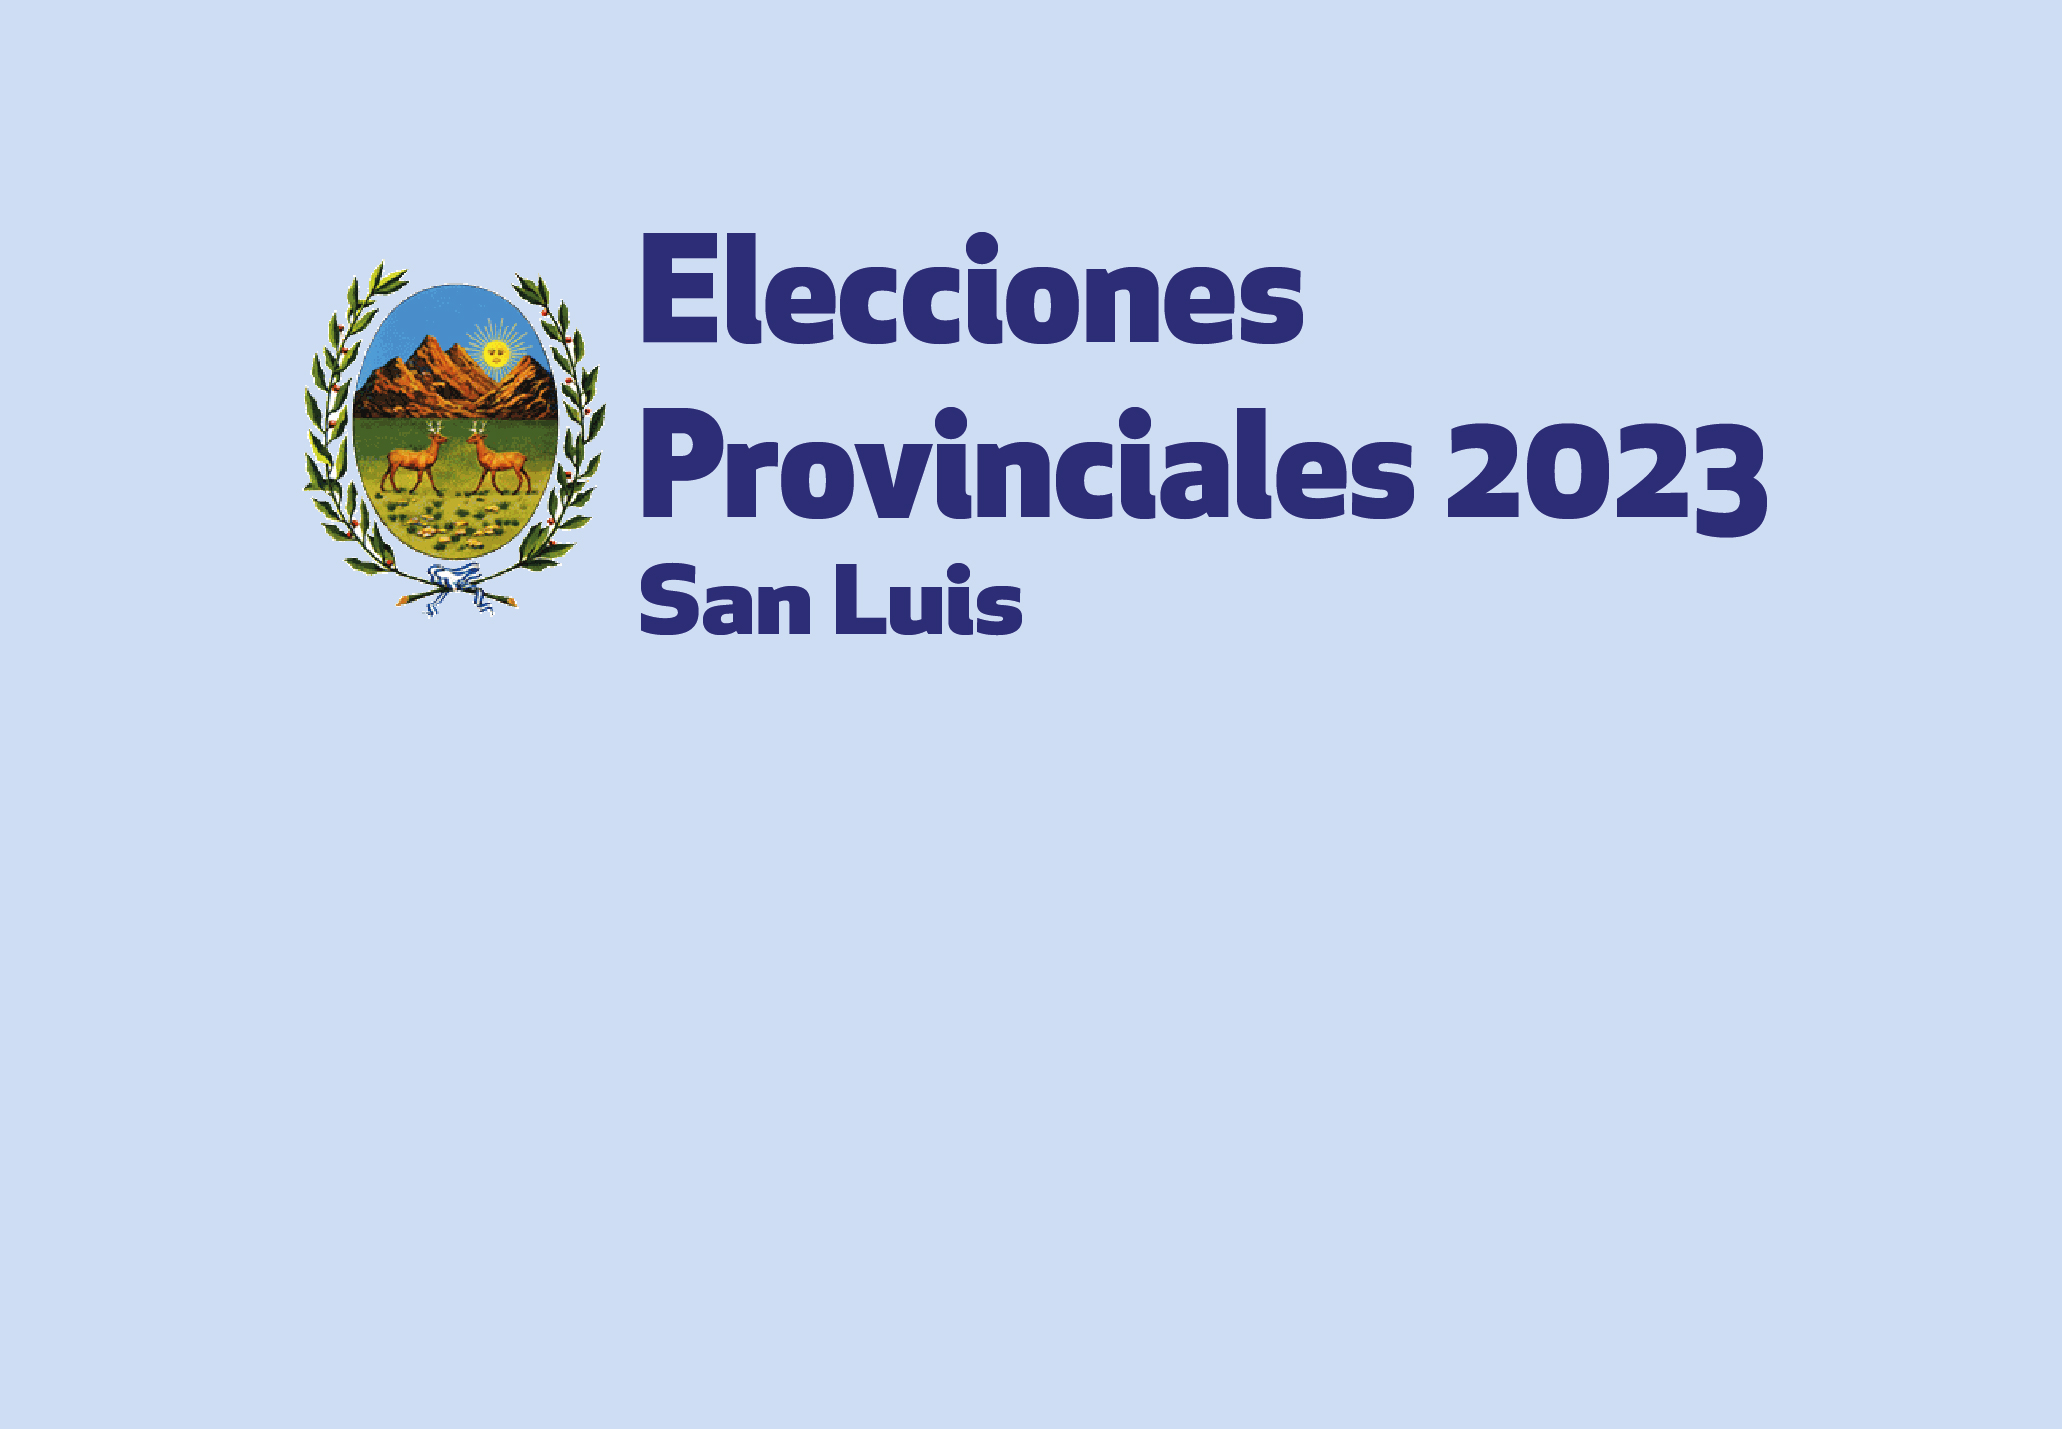 ELECCIONES PROVINCIALES 2023: ENLACE DE ACCESO AL ESCRUTINIO PROVISORIO